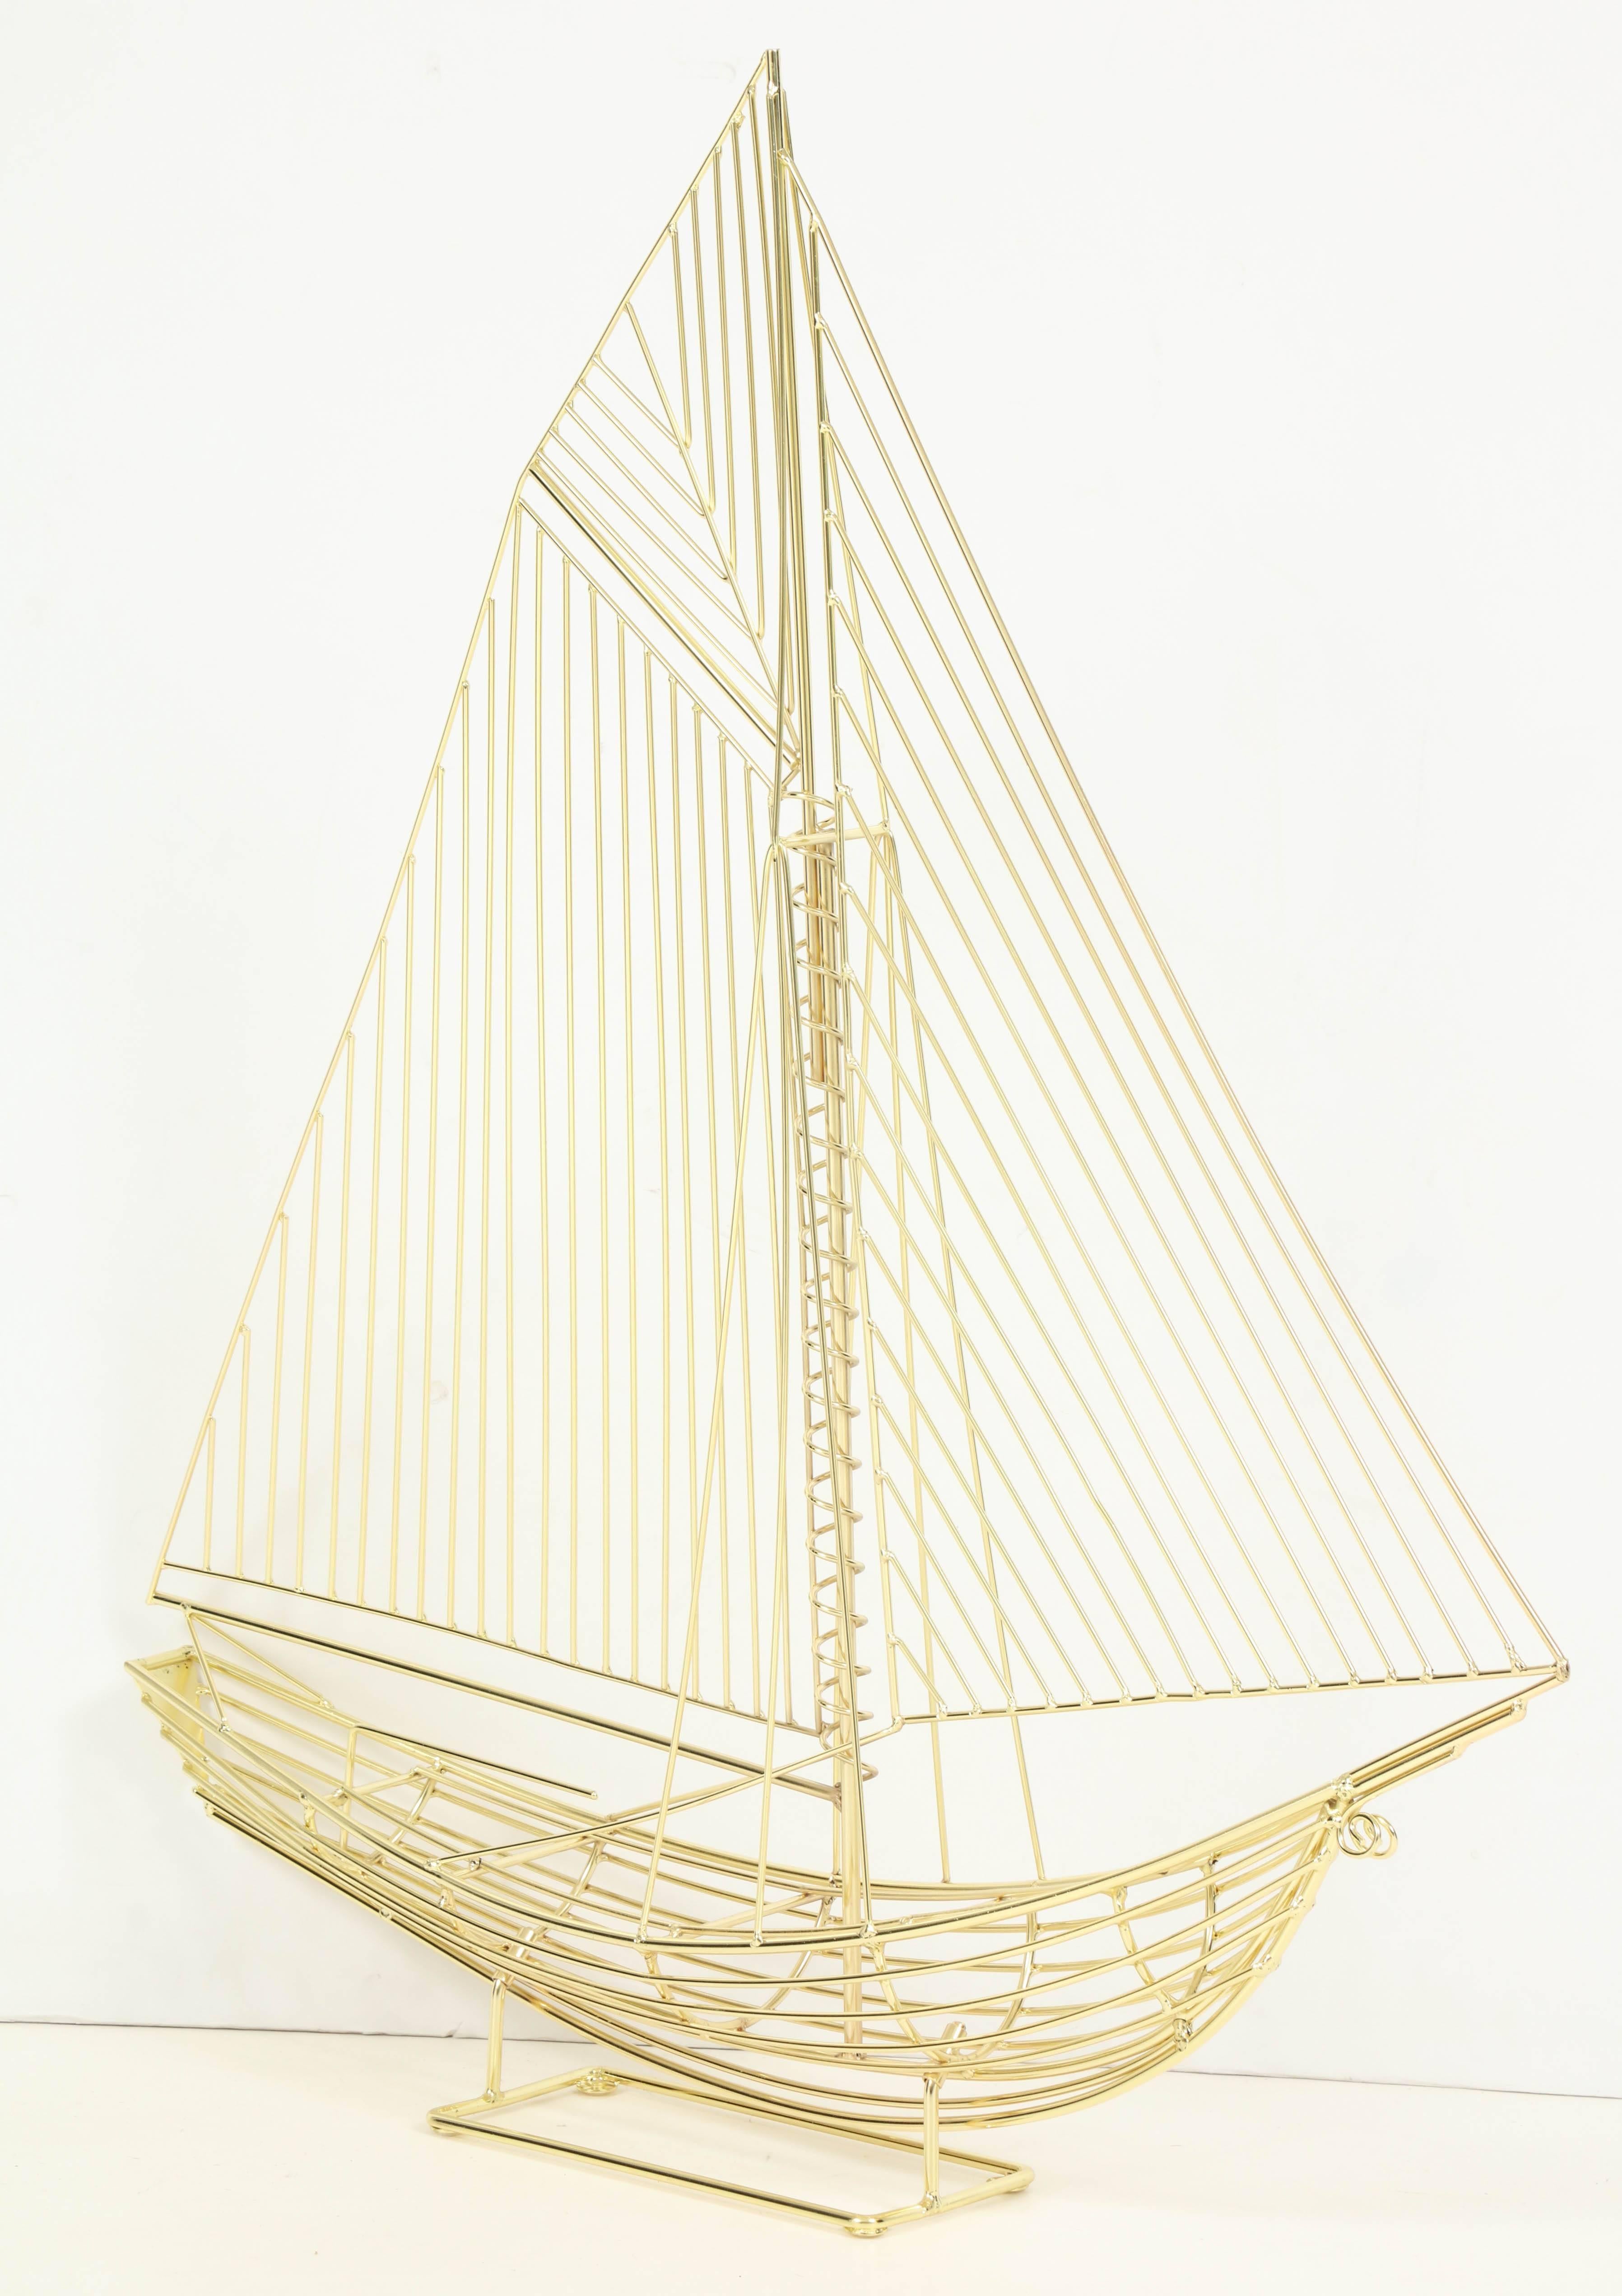 Sculpture de bateau ou de navire de Curtis Jere, signée, vers 1970. Nouvellement replaqué professionnellement en laiton. L'étiquette originale de C. Jere est toujours attachée. Cette sculpture est exposée à la galerie du 200 Lex au New York Design